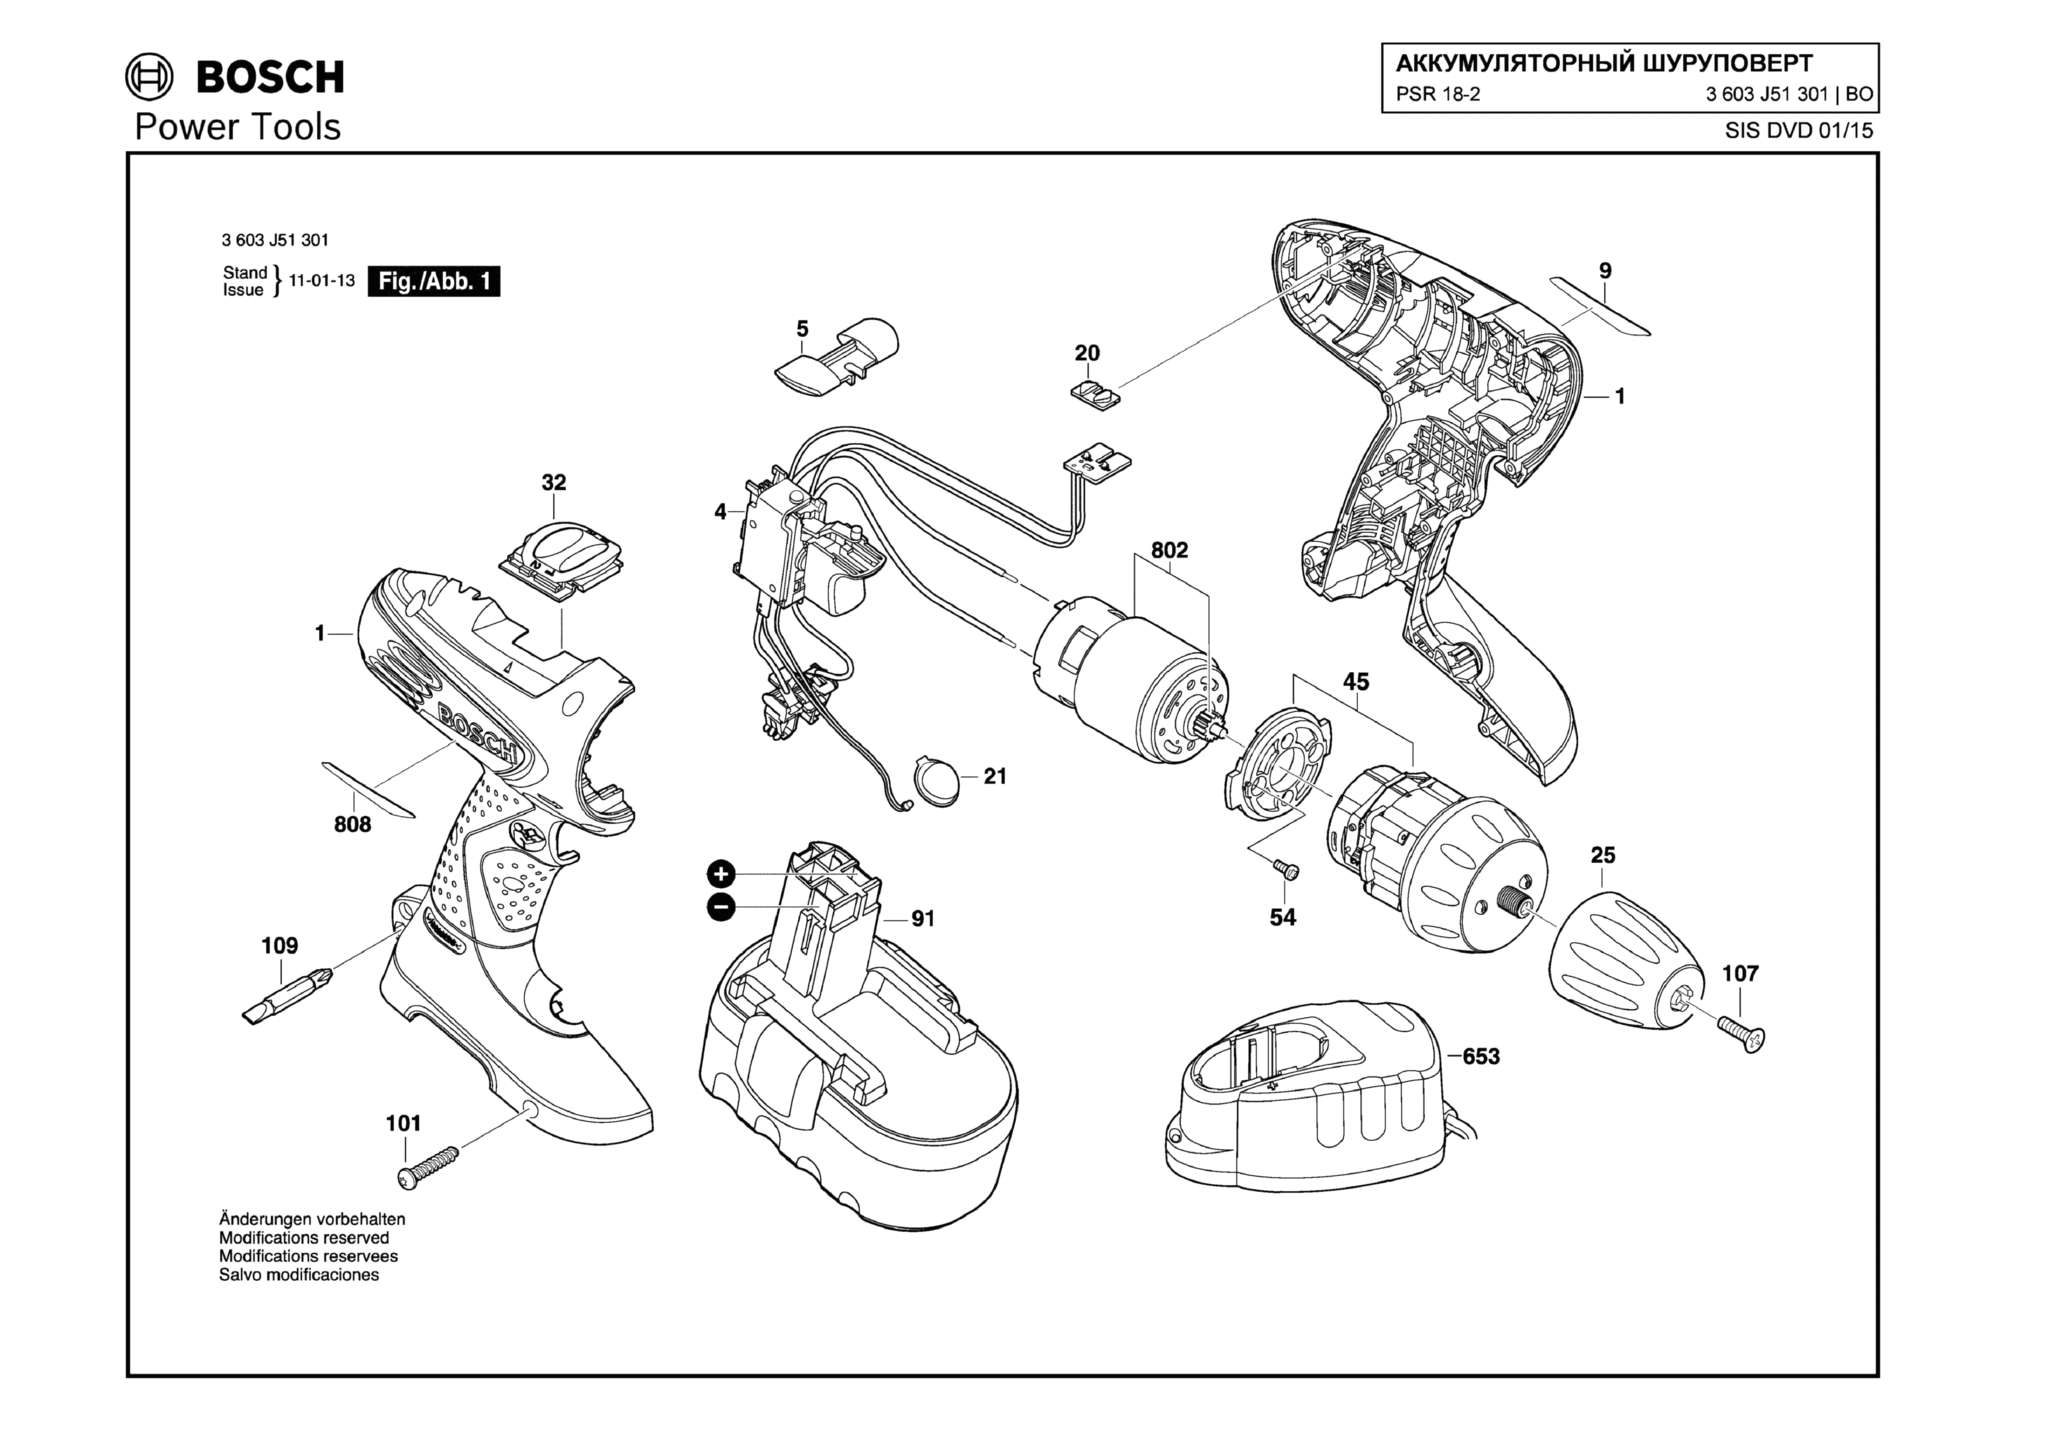 Запчасти, схема и деталировка Bosch PSR 18-2 (ТИП 3603J51301)